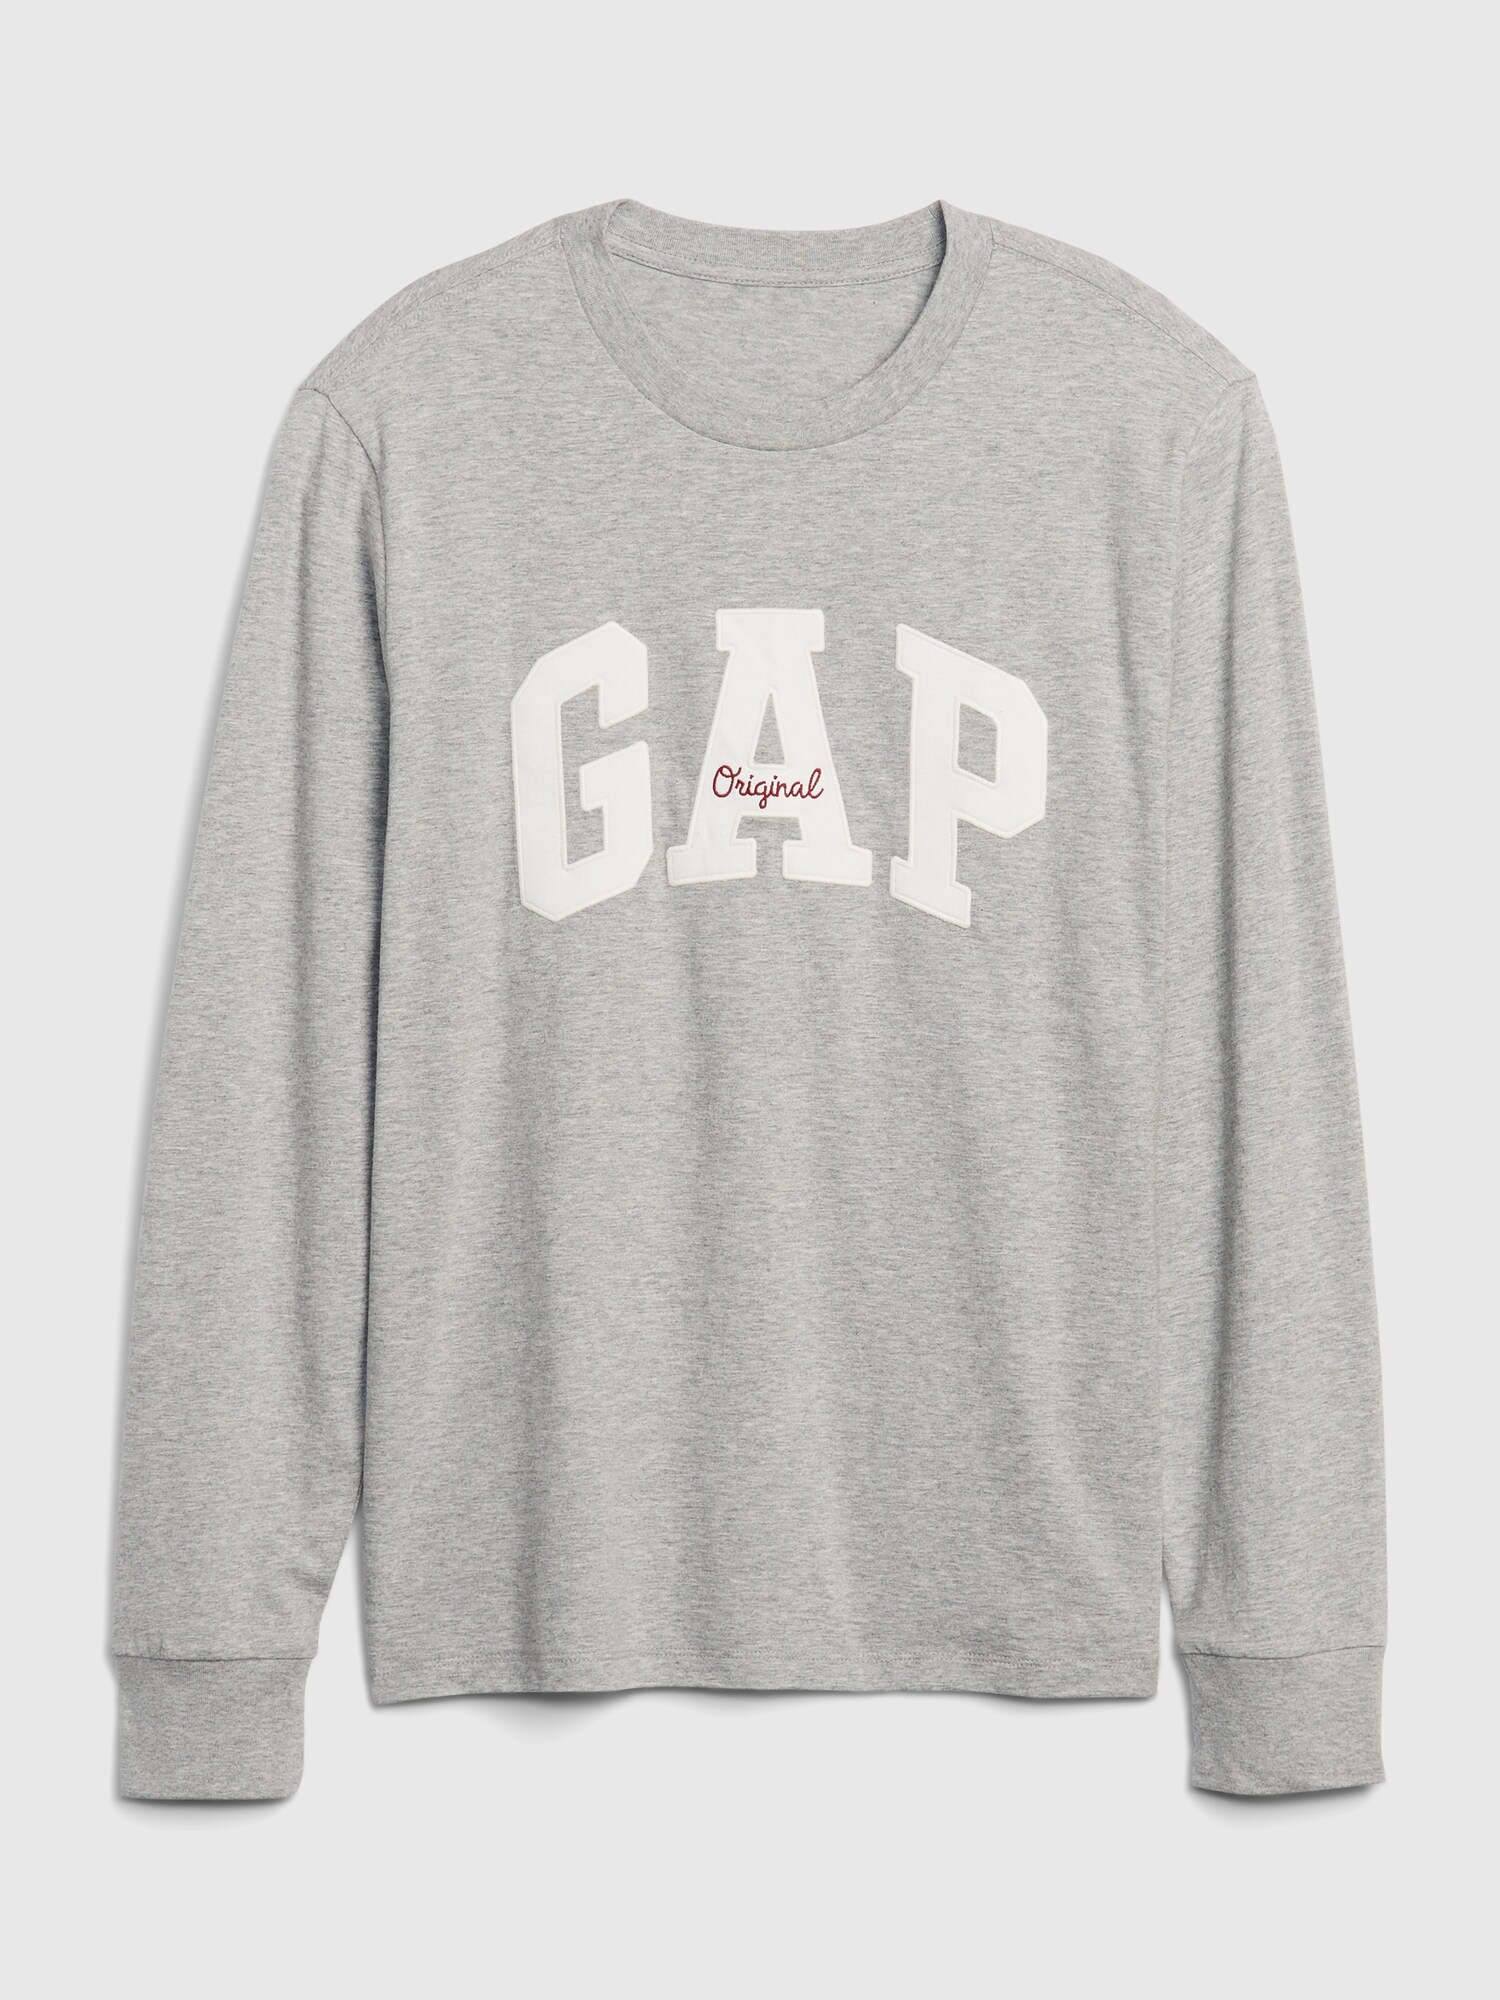 Gap Logo Uzun Kollu T-Shirt. 7